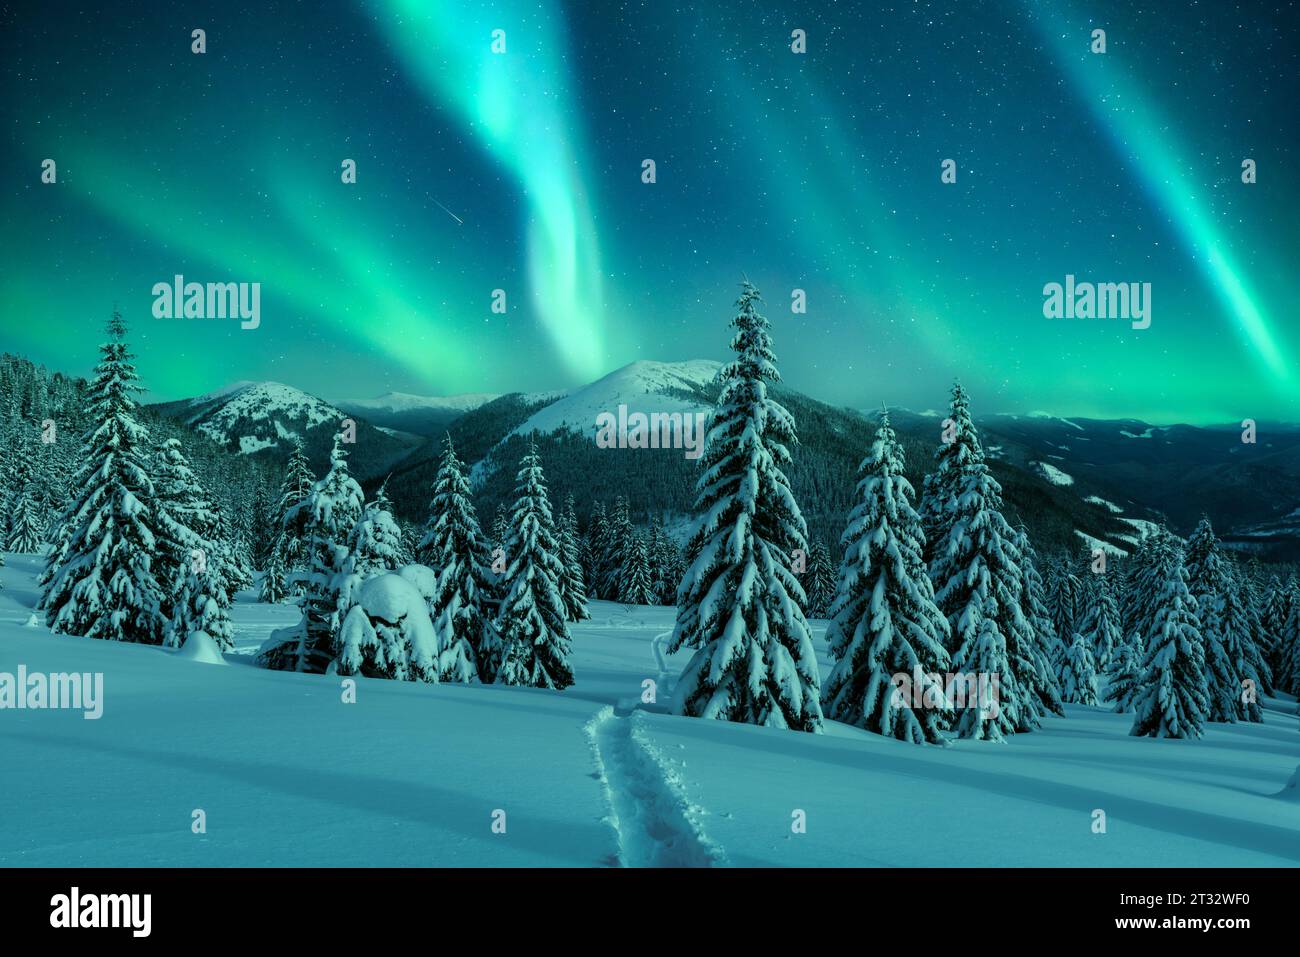 Aurora boreale. Aurora boreale nella foresta invernale. Incredibile paesaggio notturno con conifere piene di neve in una radura di montagna invernale con un sentiero inciso attraverso la neve Foto Stock